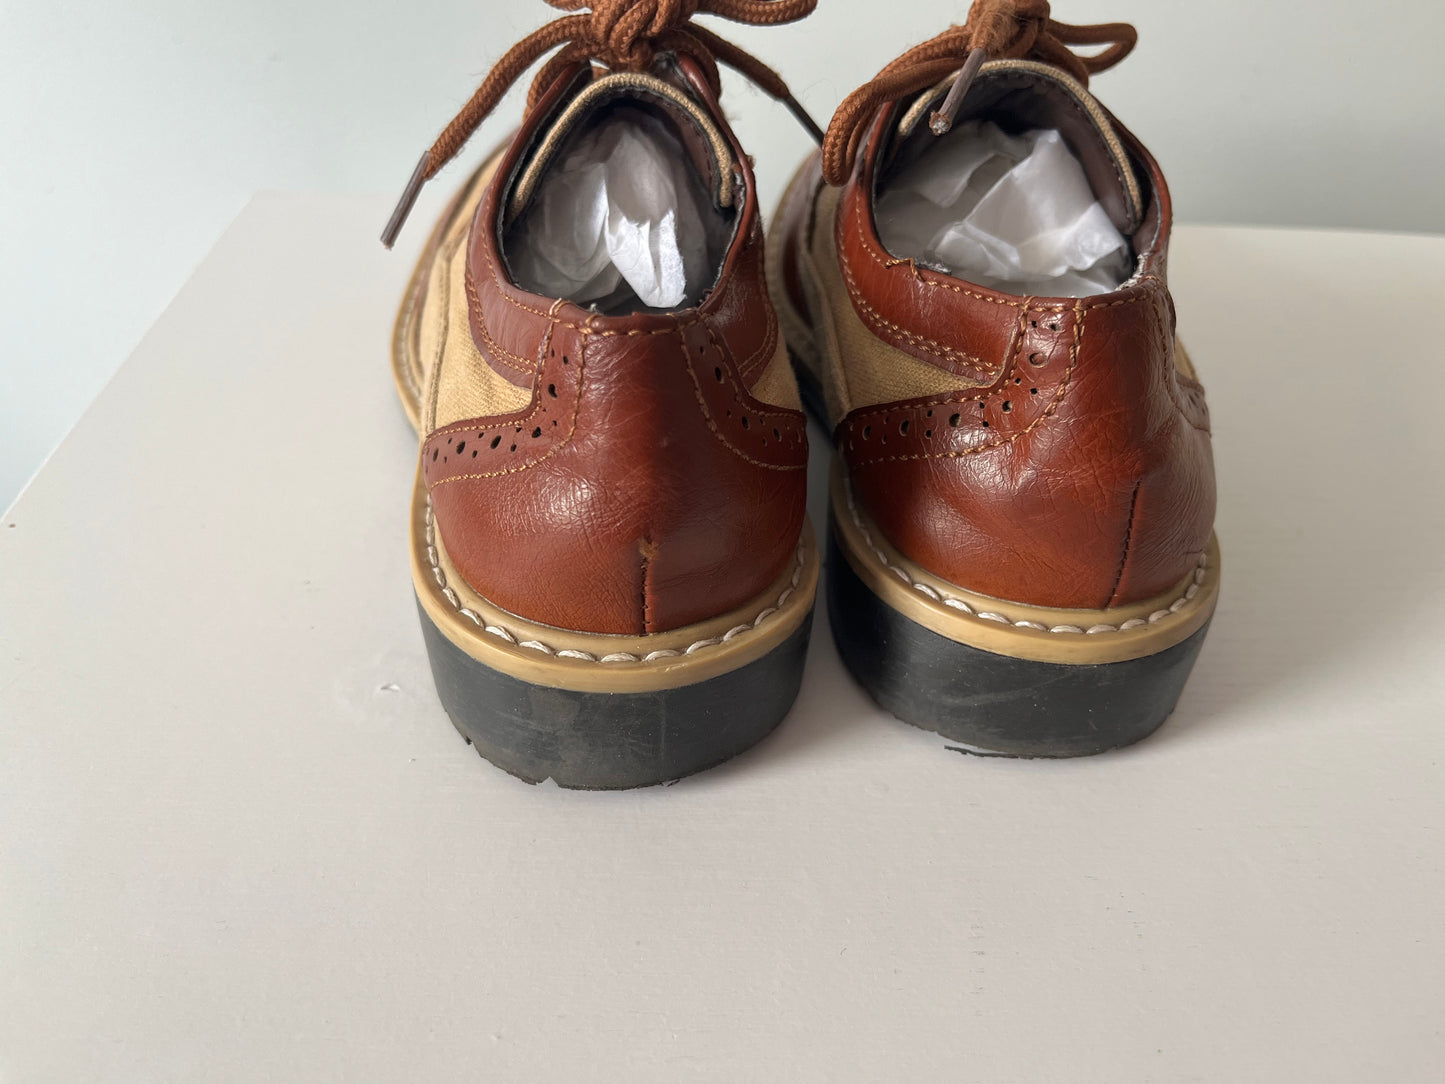 PPU 45241 (Evendale/Blue Ash)  Kenneth Cole Reaction Boys Dress Shoes  Size 12.5   (12 1/2)